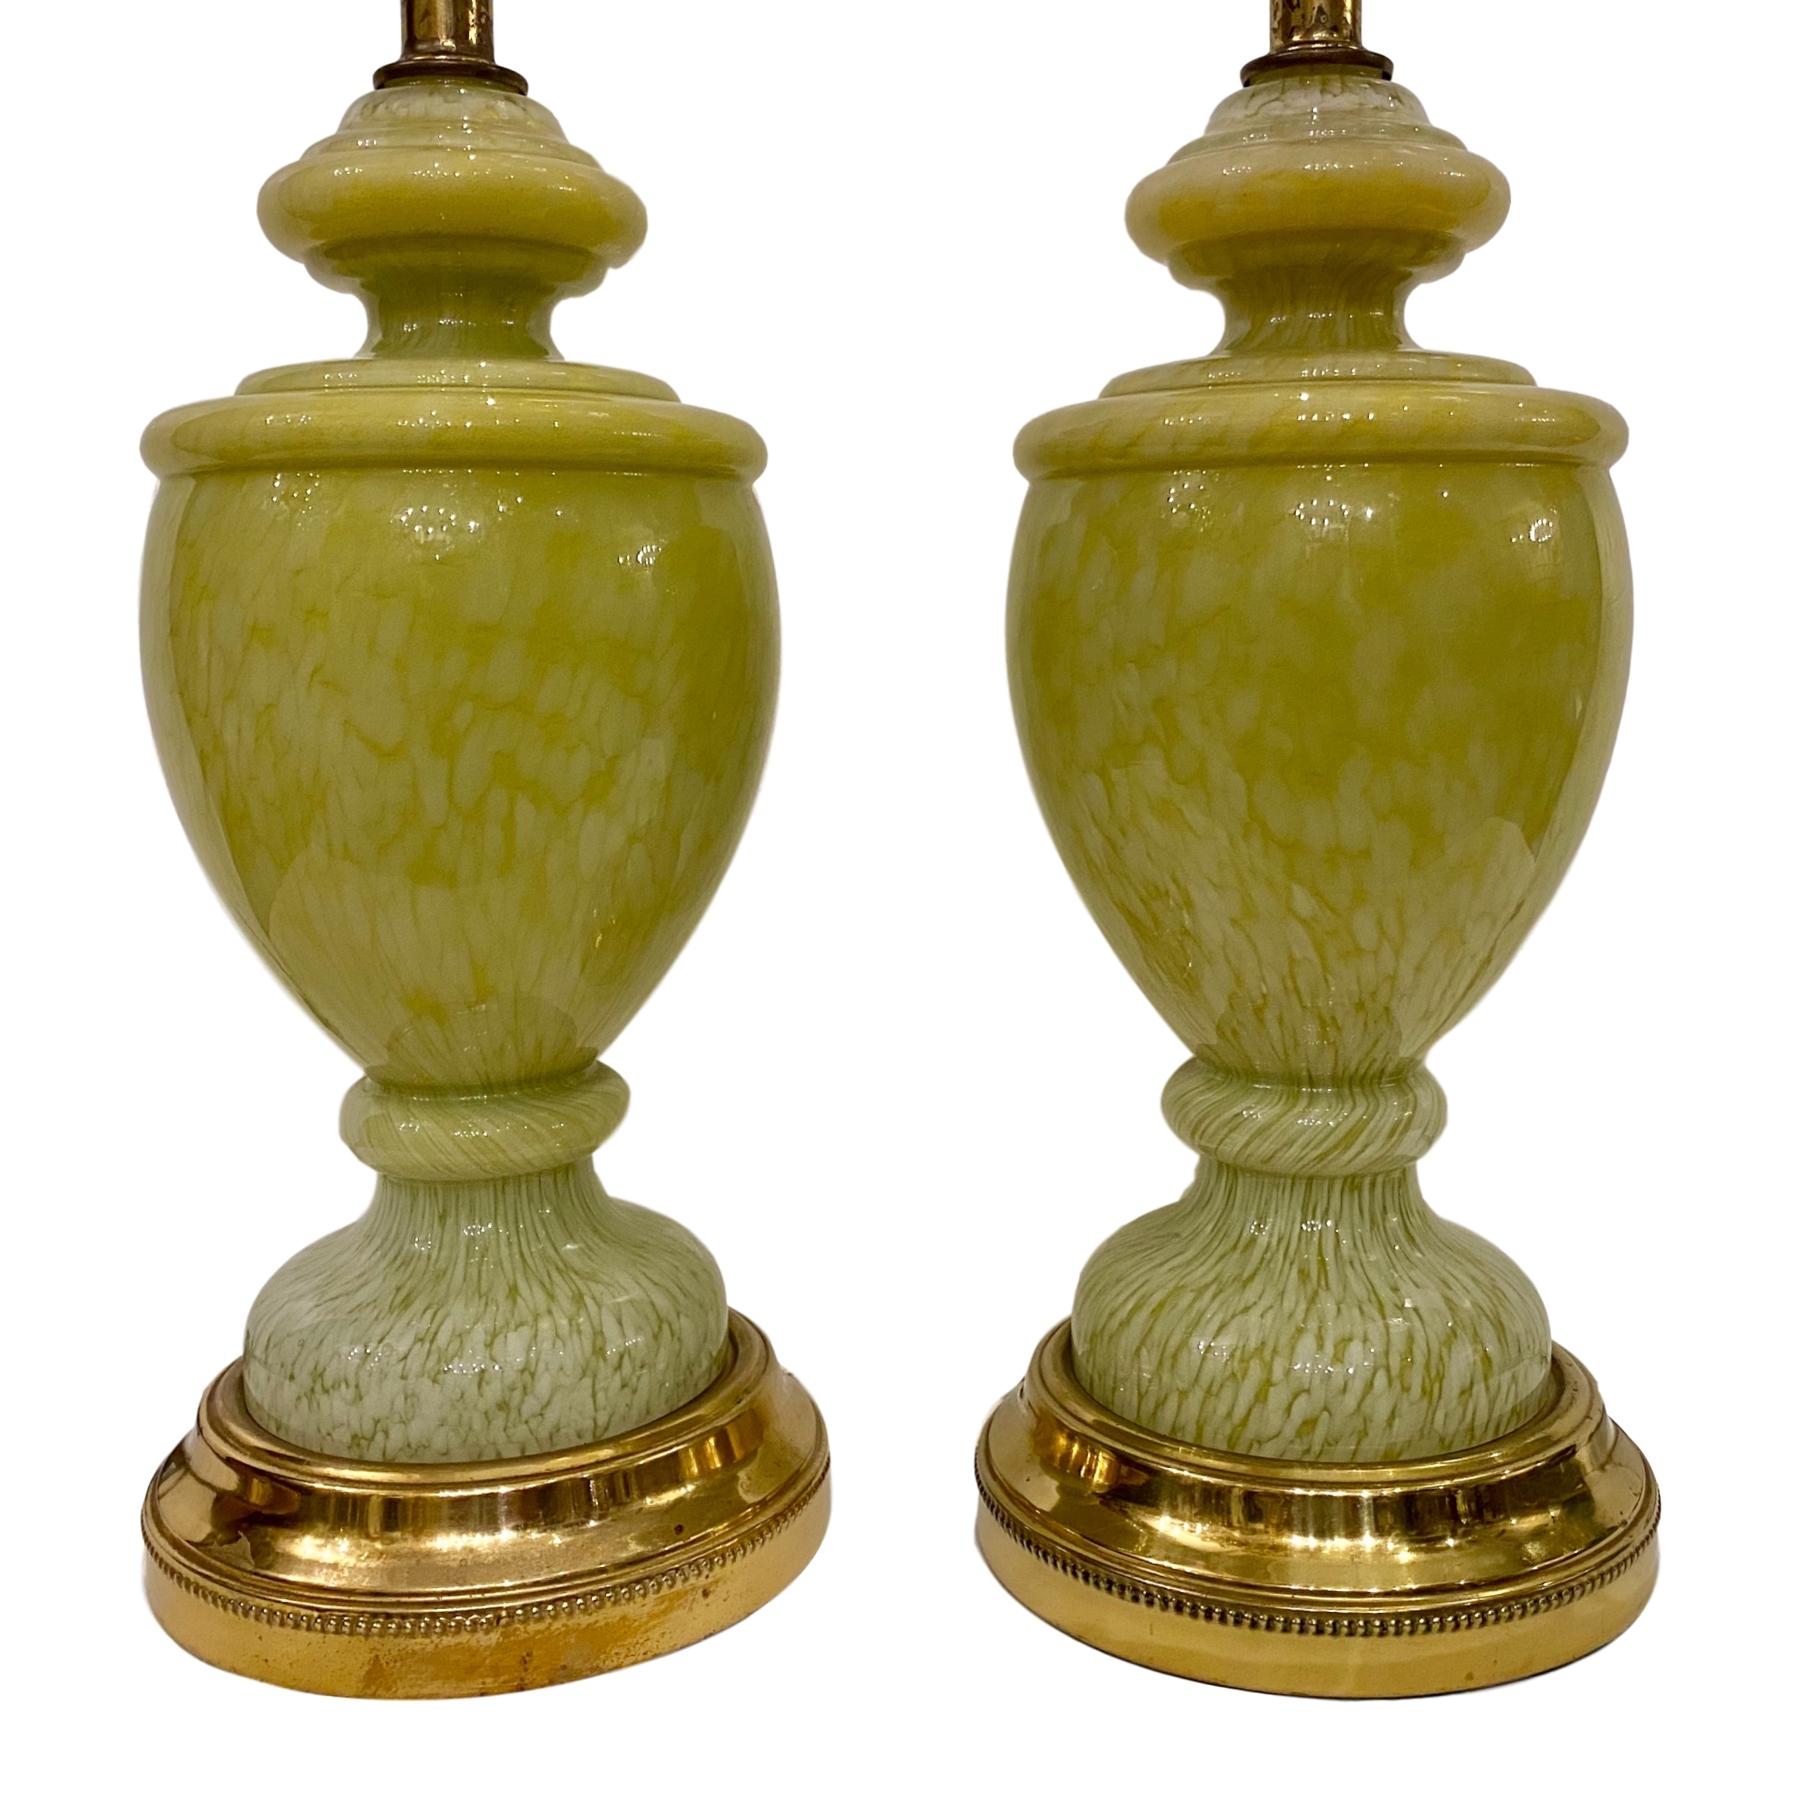 Ein Paar französische Tischlampen aus blassgrünem Kunstglas mit vergoldeten Sockeln aus den späten 1940er Jahren.

Abmessungen:
Höhe des Körpers 16